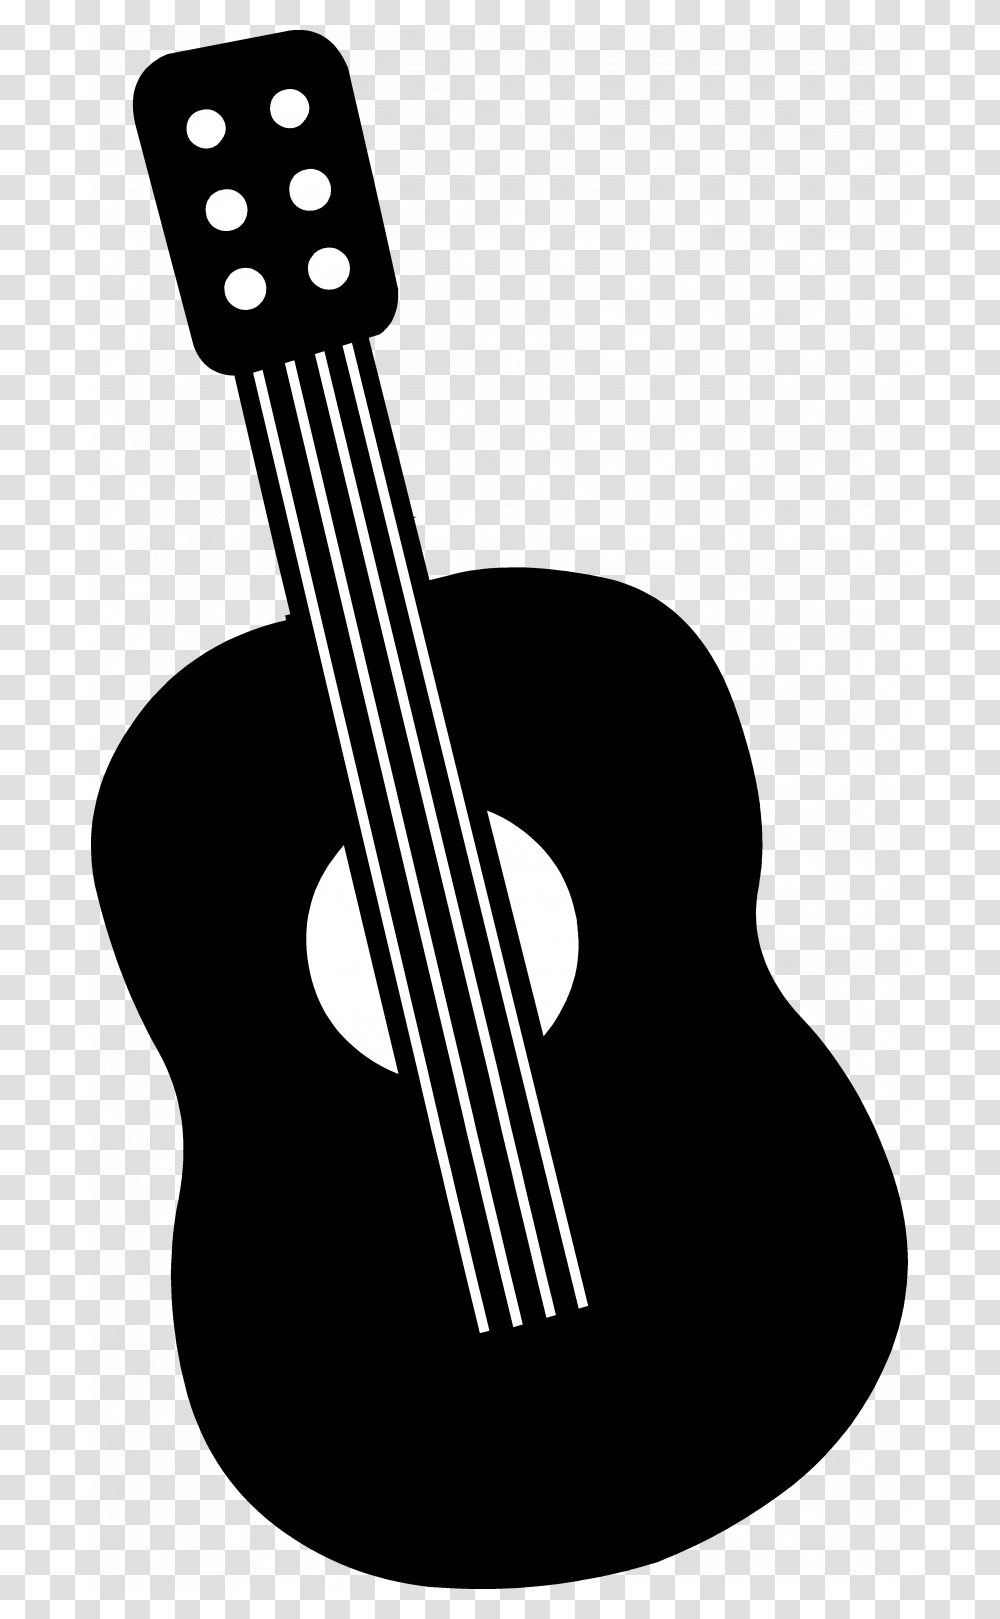 Guitar Clipart Silhouette Small Guitar Clip Art, Bass Guitar, Leisure Activities, Musical Instrument Transparent Png